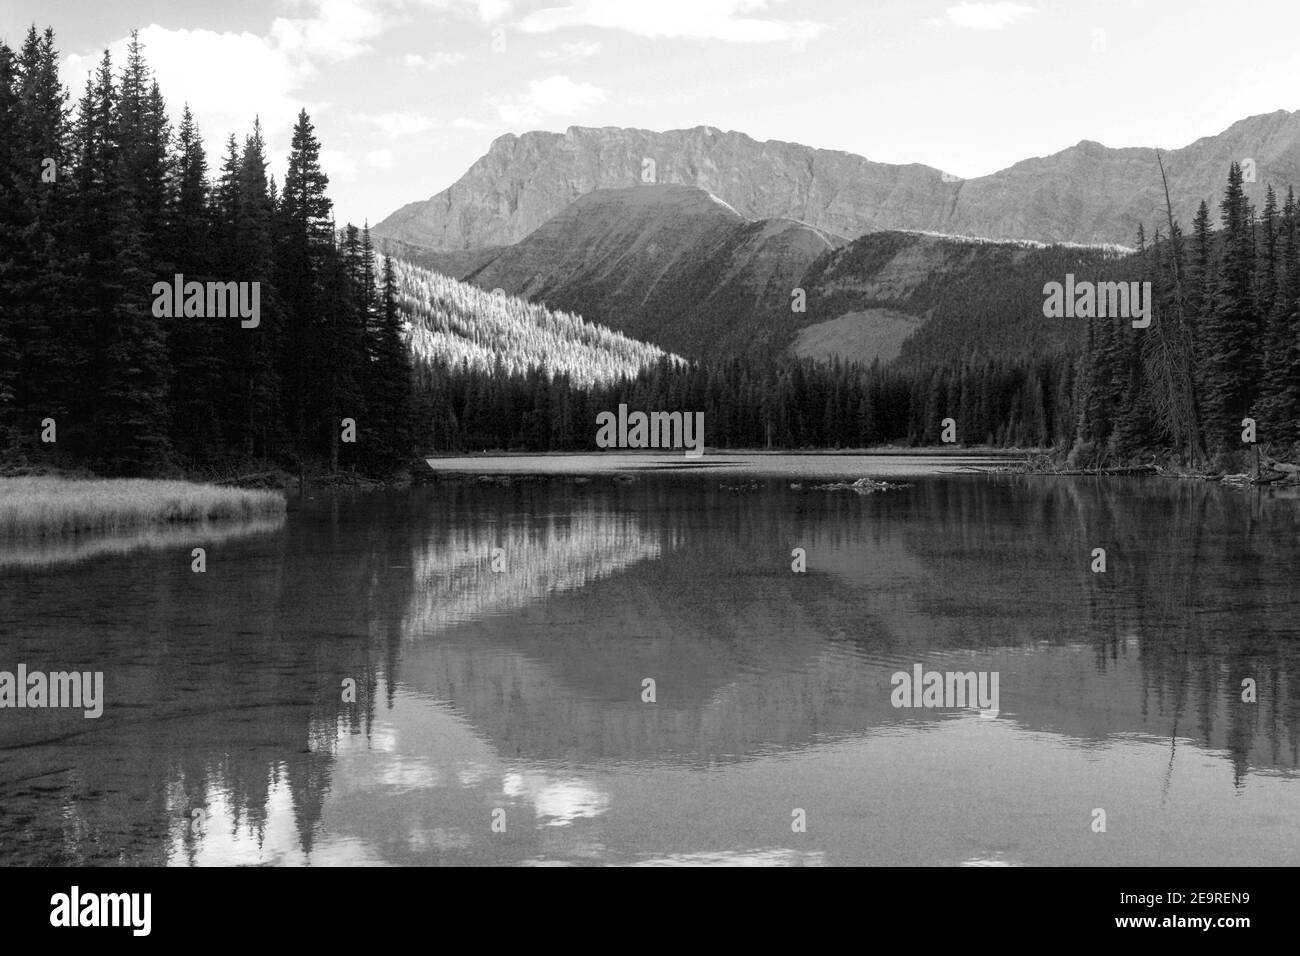 Elbow lake reflection Stock Photo